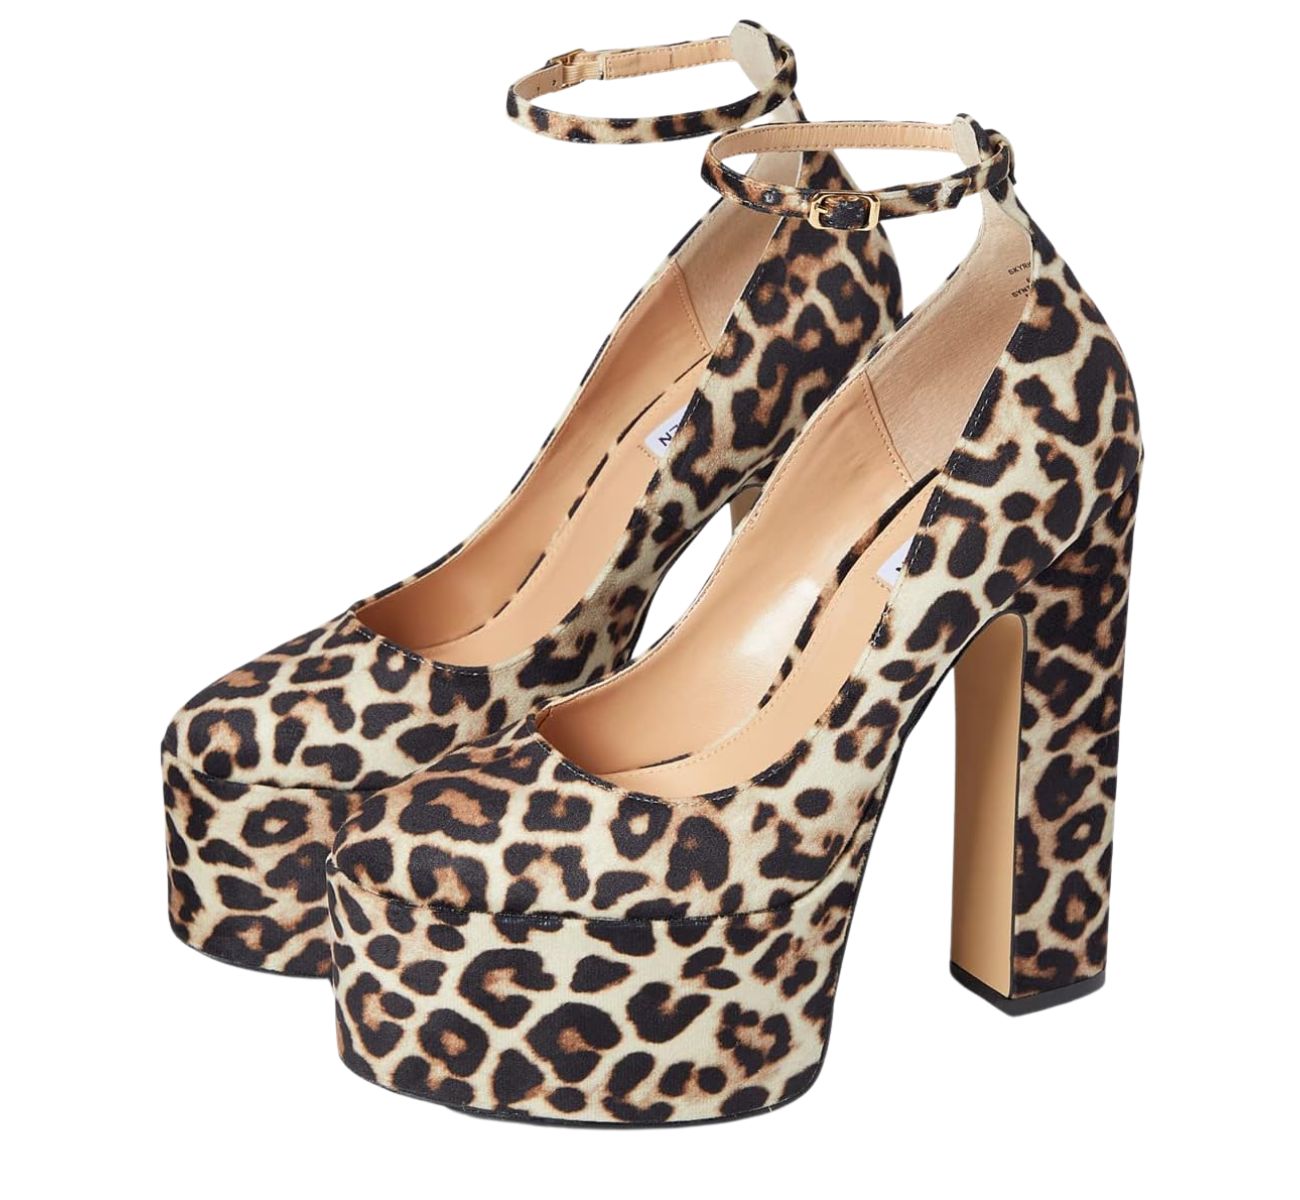 Brown leopard print round toe block heel platform pumps on white background.